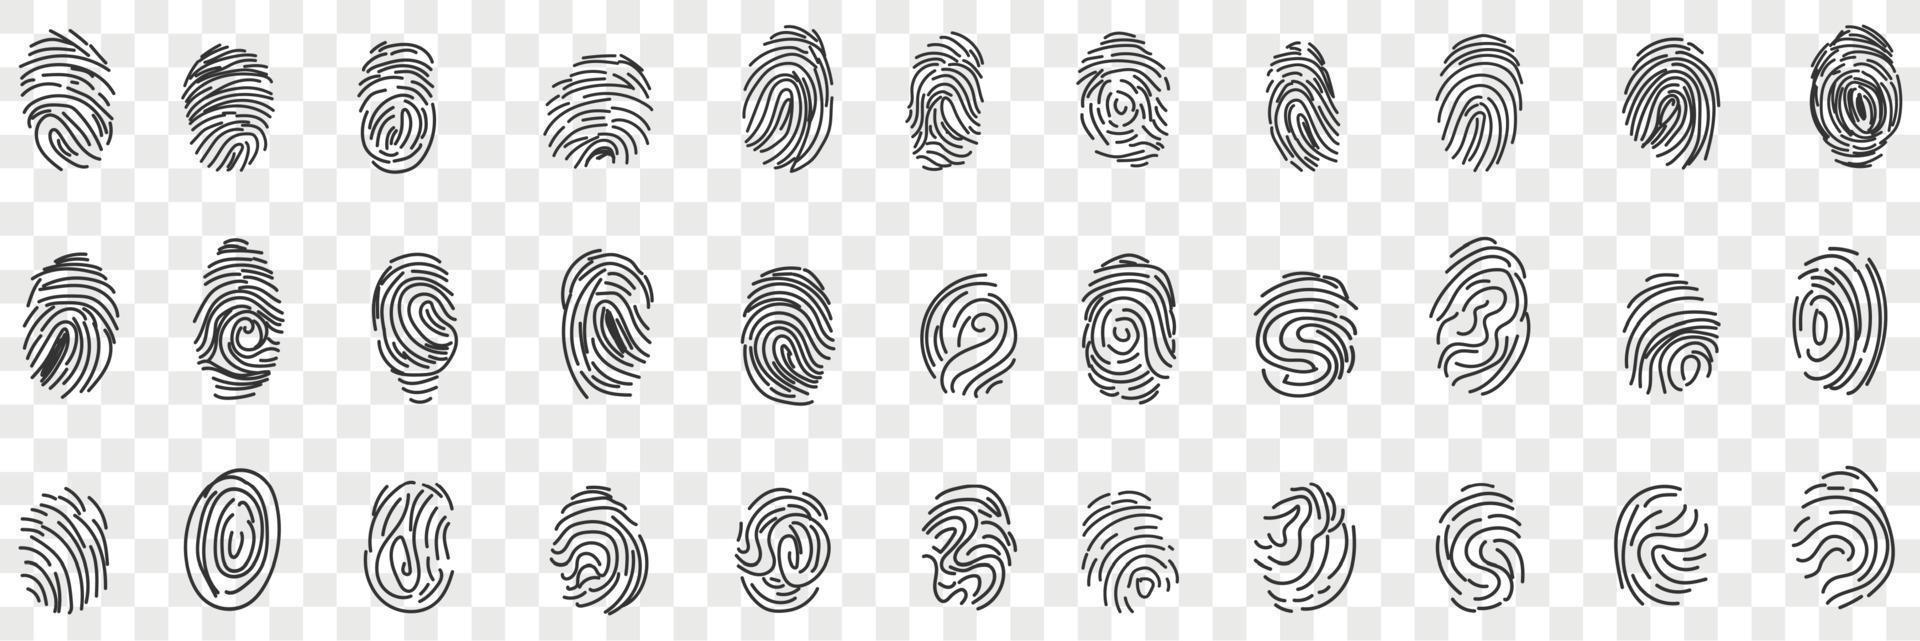 huellas dactilares personal identidad garabatear colocar. colección de mano dibujado varios humano huellas dactilares para identificando persona o pasaporte identificación o de viaje aislado en transparente antecedentes vector